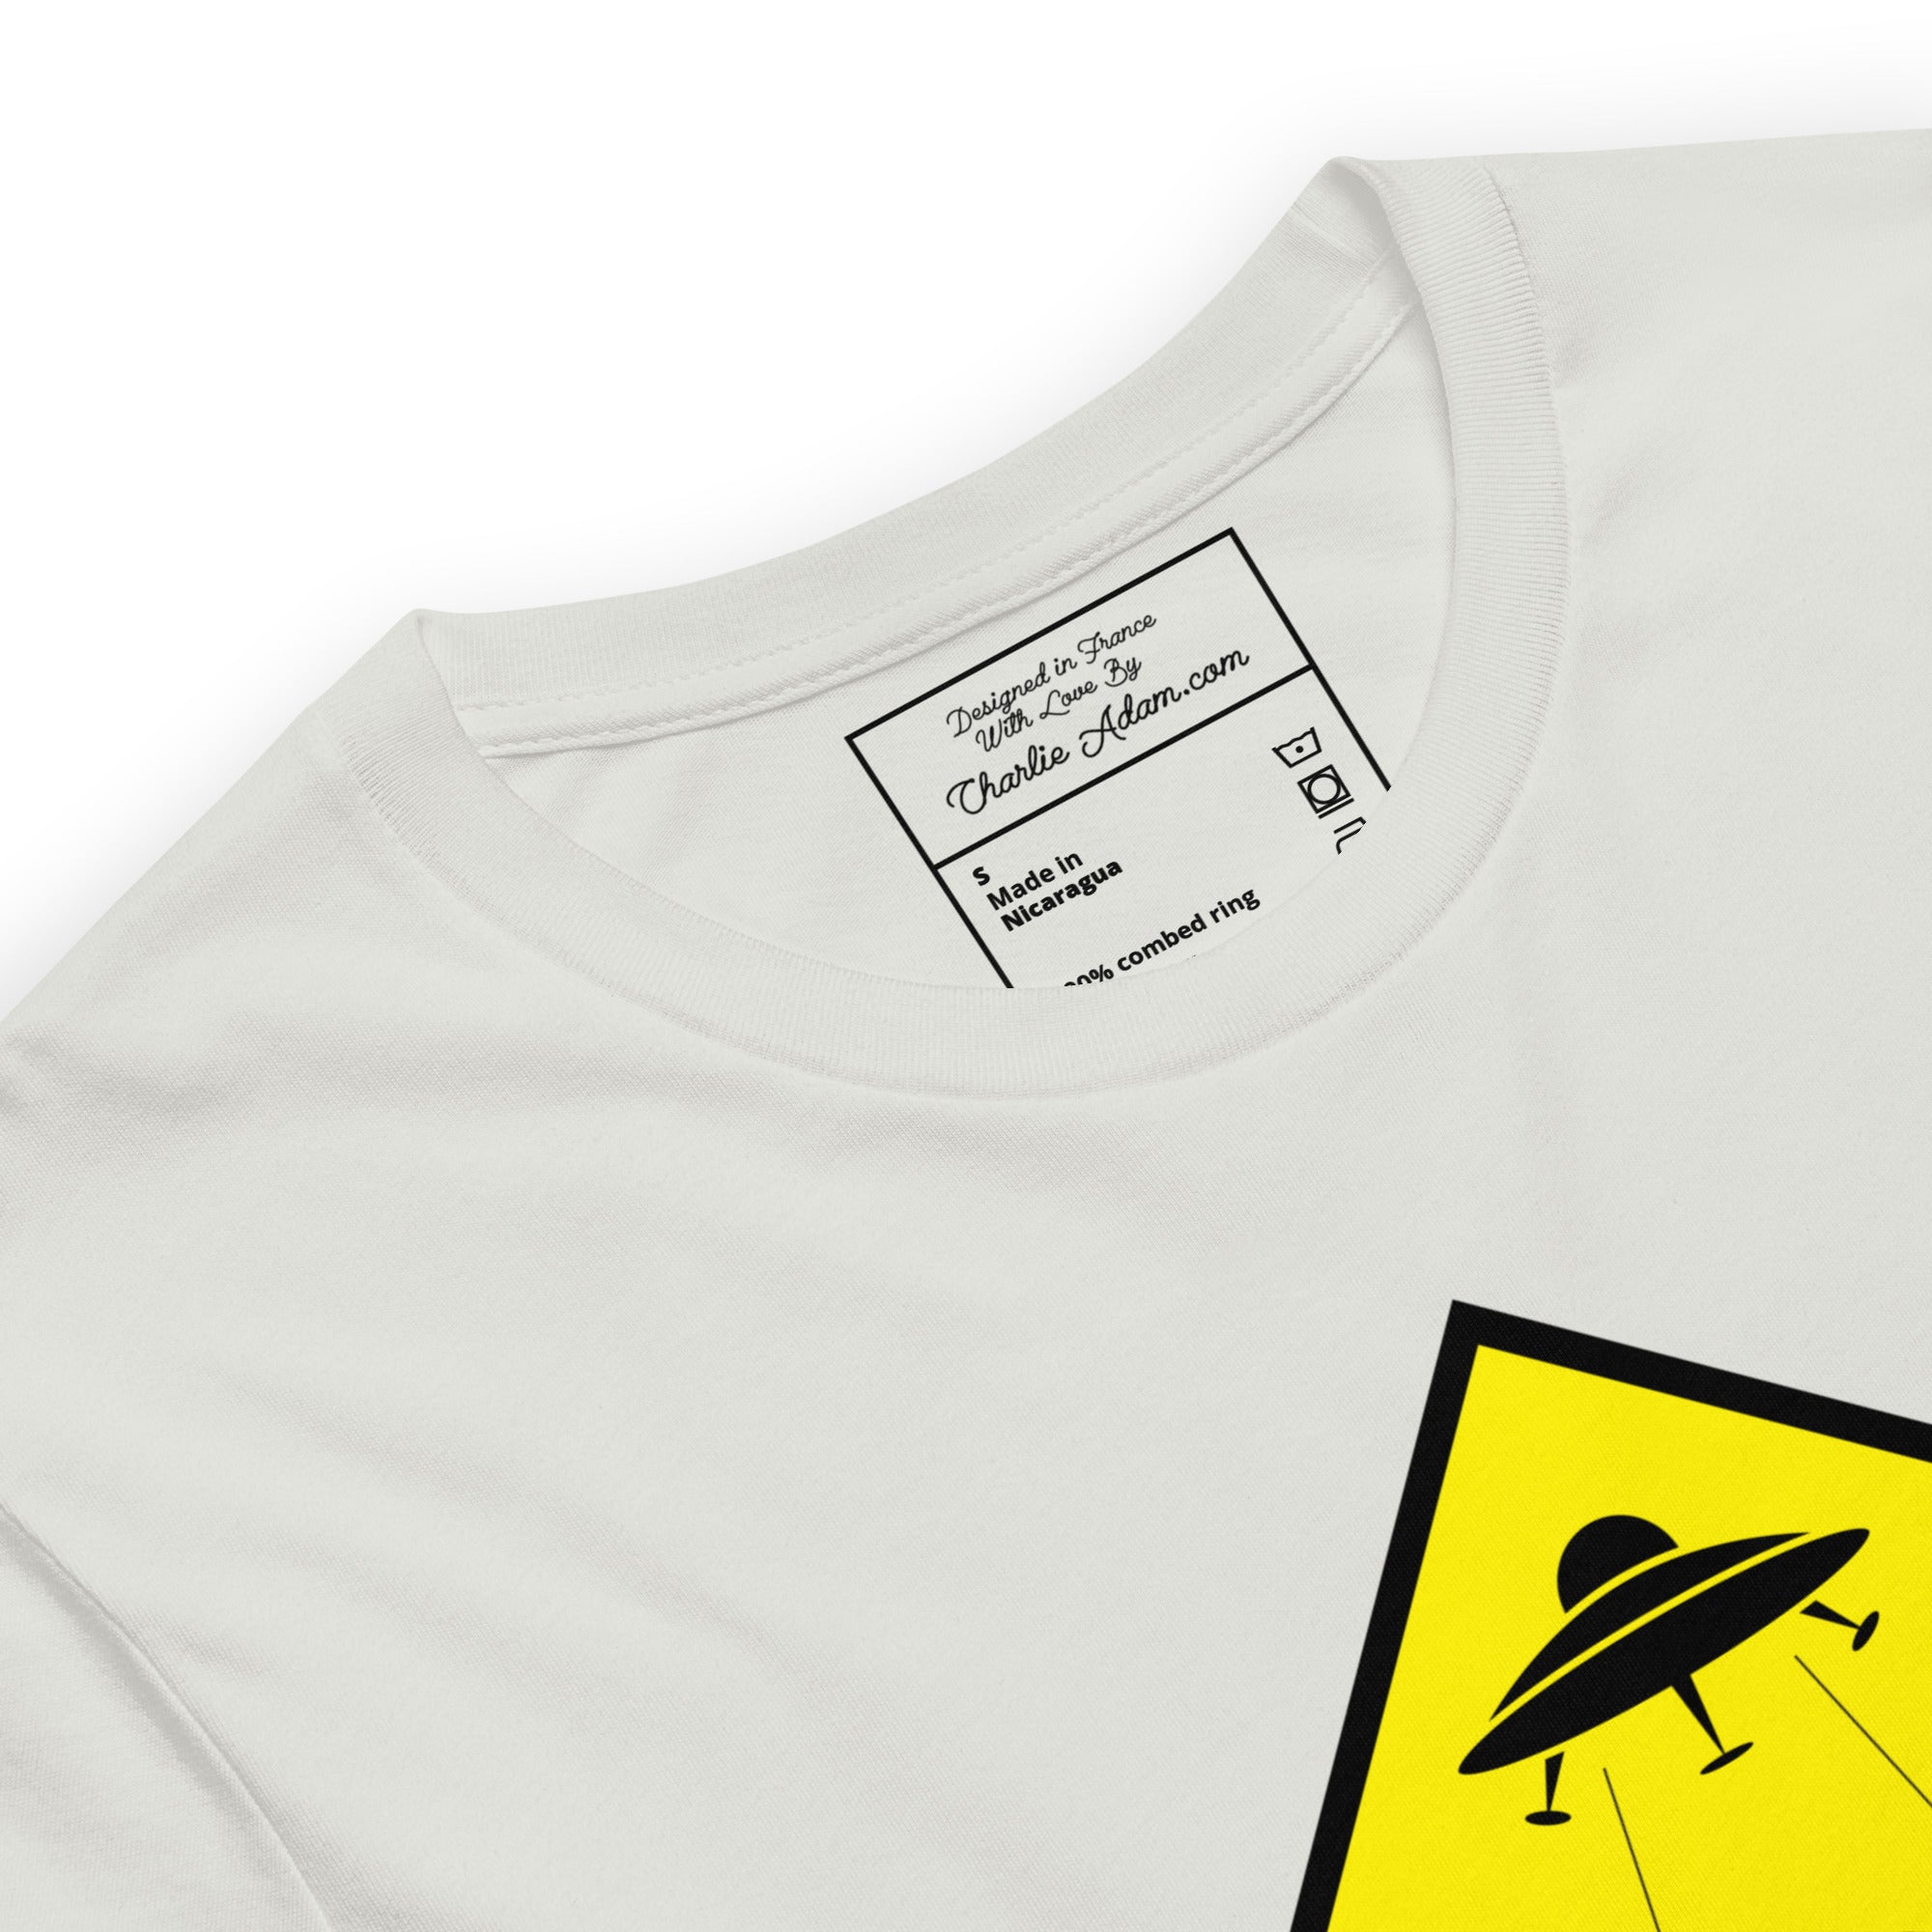 T-shirt en coton unisexe UFO Zone sur couleurs claires